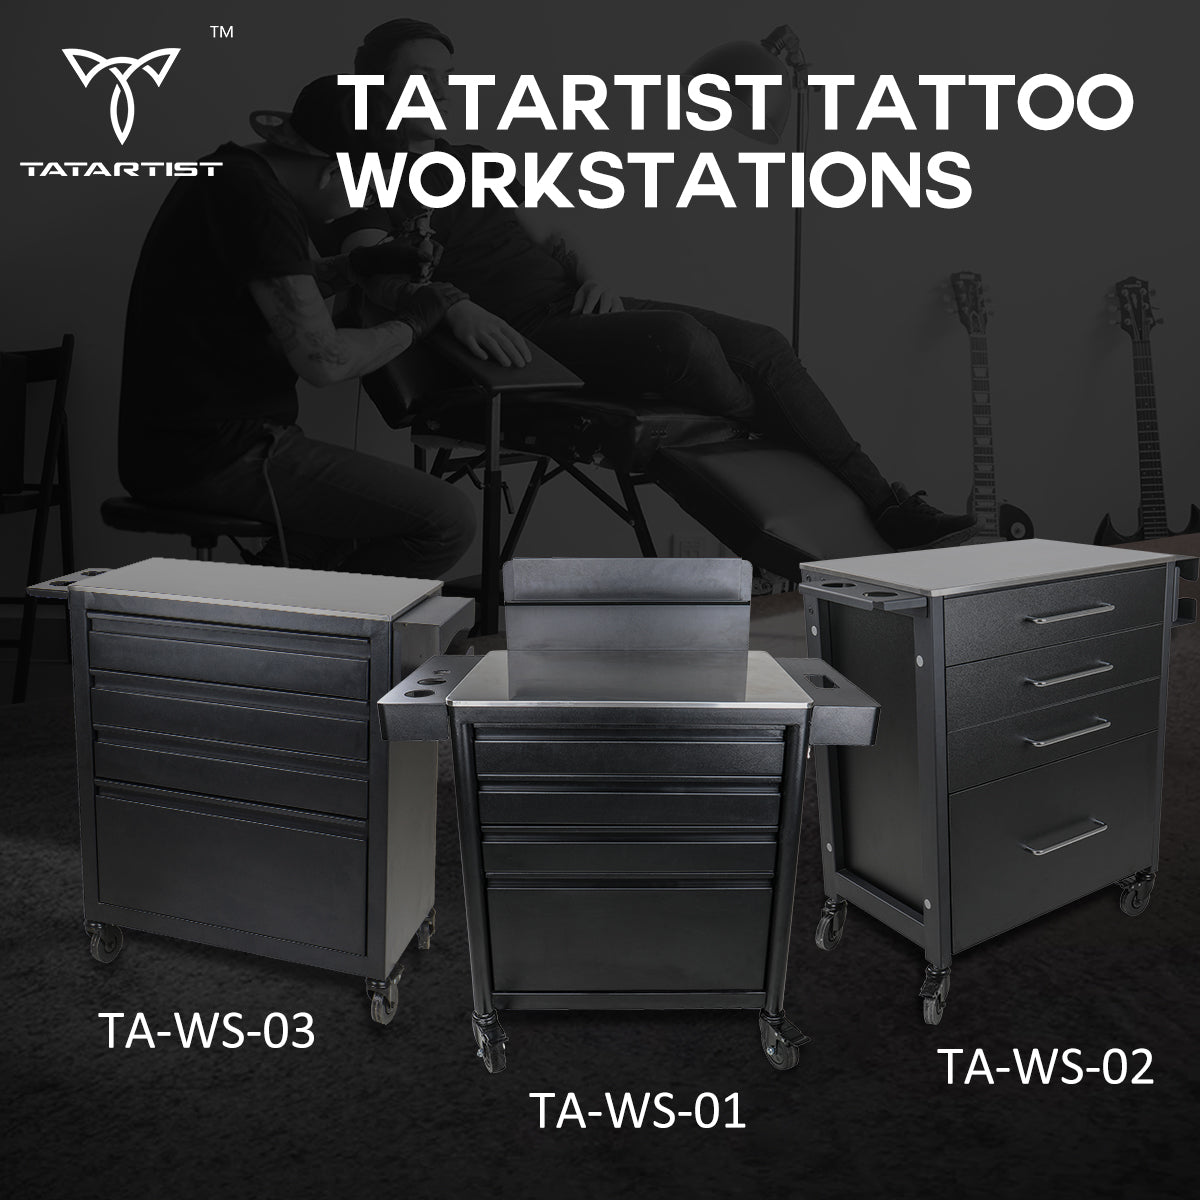 tatsoul tattoo workstations